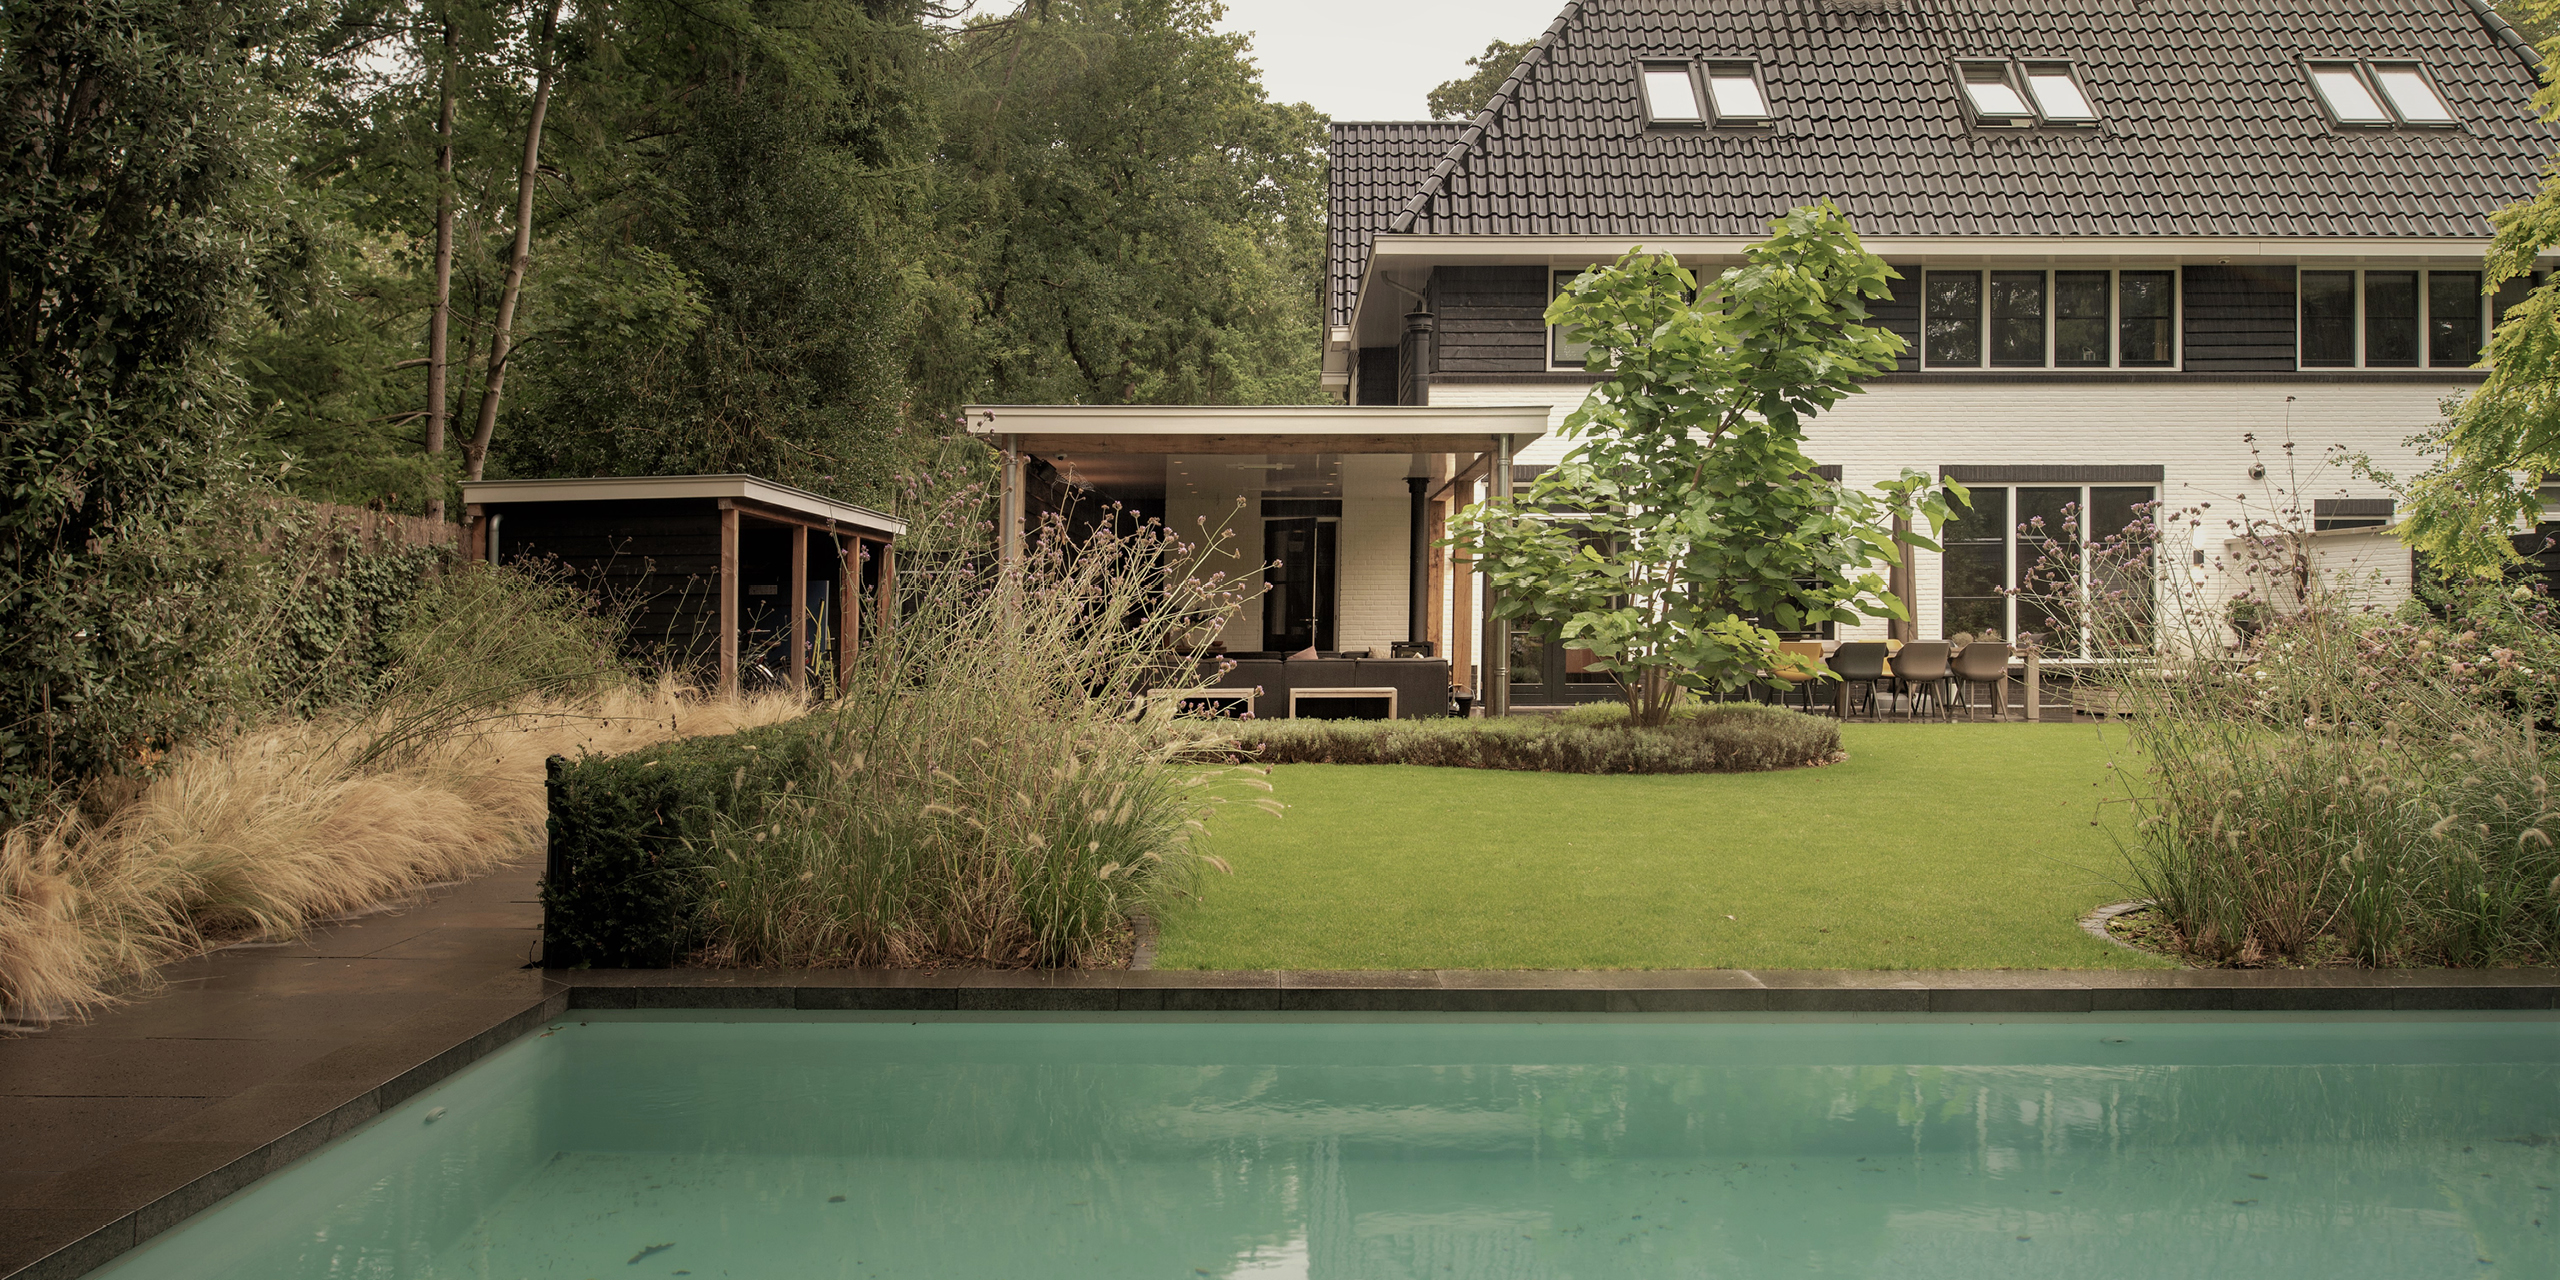 Buytengewoon tuin in Zeist met zwembad, gazon, taxushaag, bomen, berging, veranda, terras en zithoek.